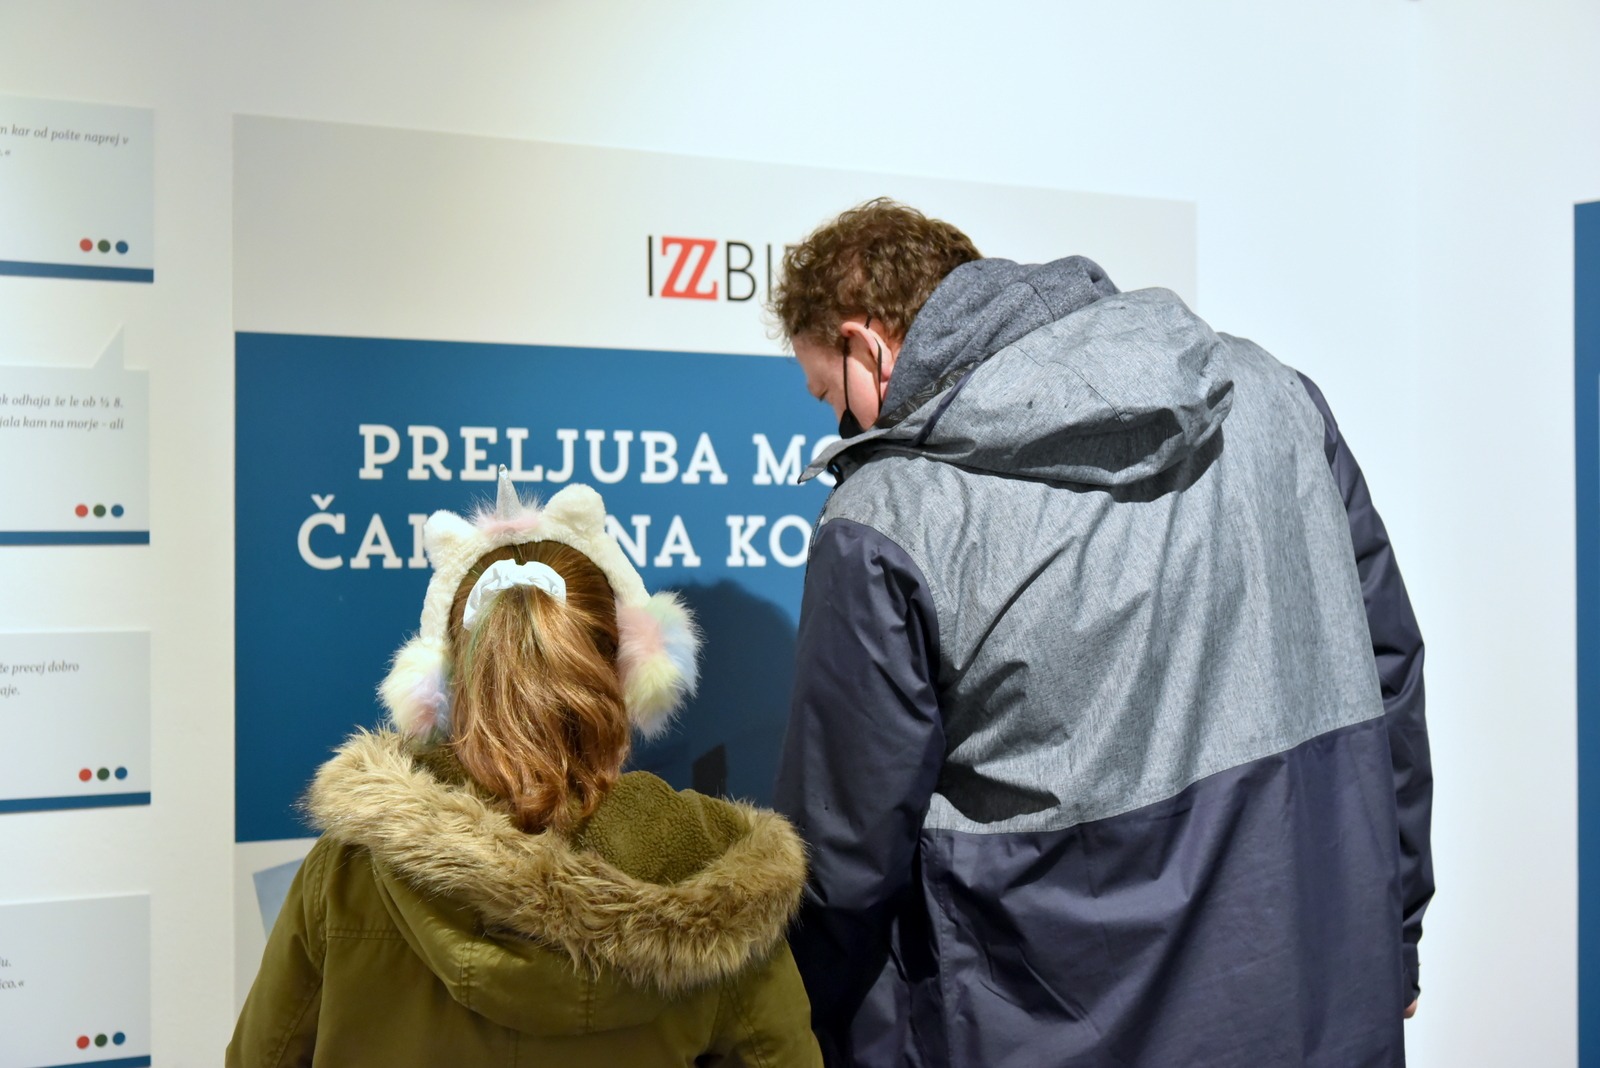 Slovenski kulturni praznik v MnZC 2021 (foto)